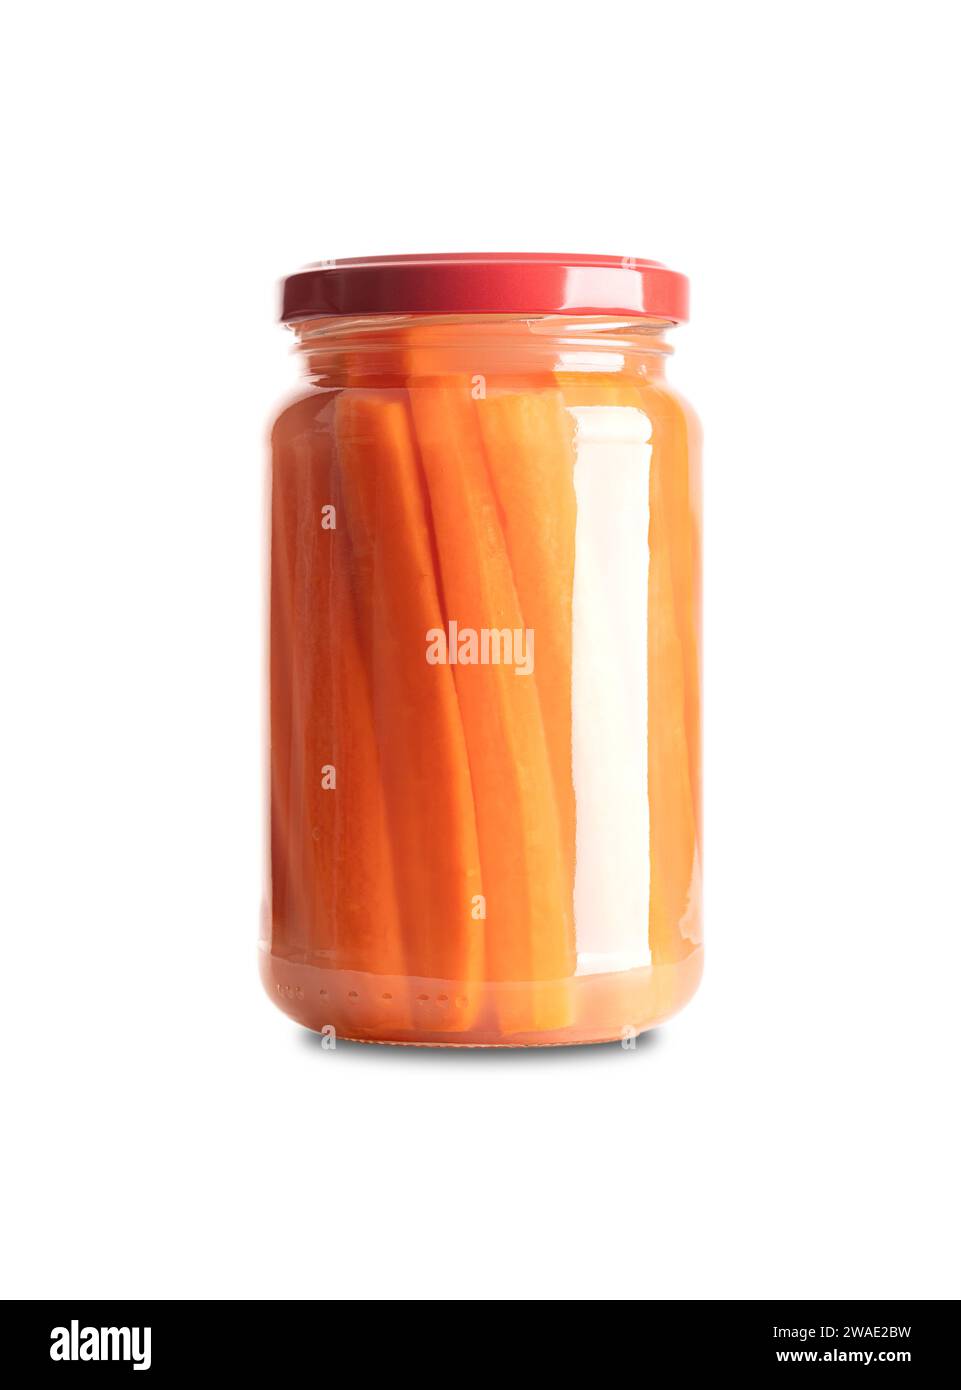 Karottenstäbchen, hausgemachte fermentierte Karotten, im Glasgefäß mit Deckel. Karotten in Sticks geschnitten, fermentiert von Milchsäurebakterien. Stockfoto